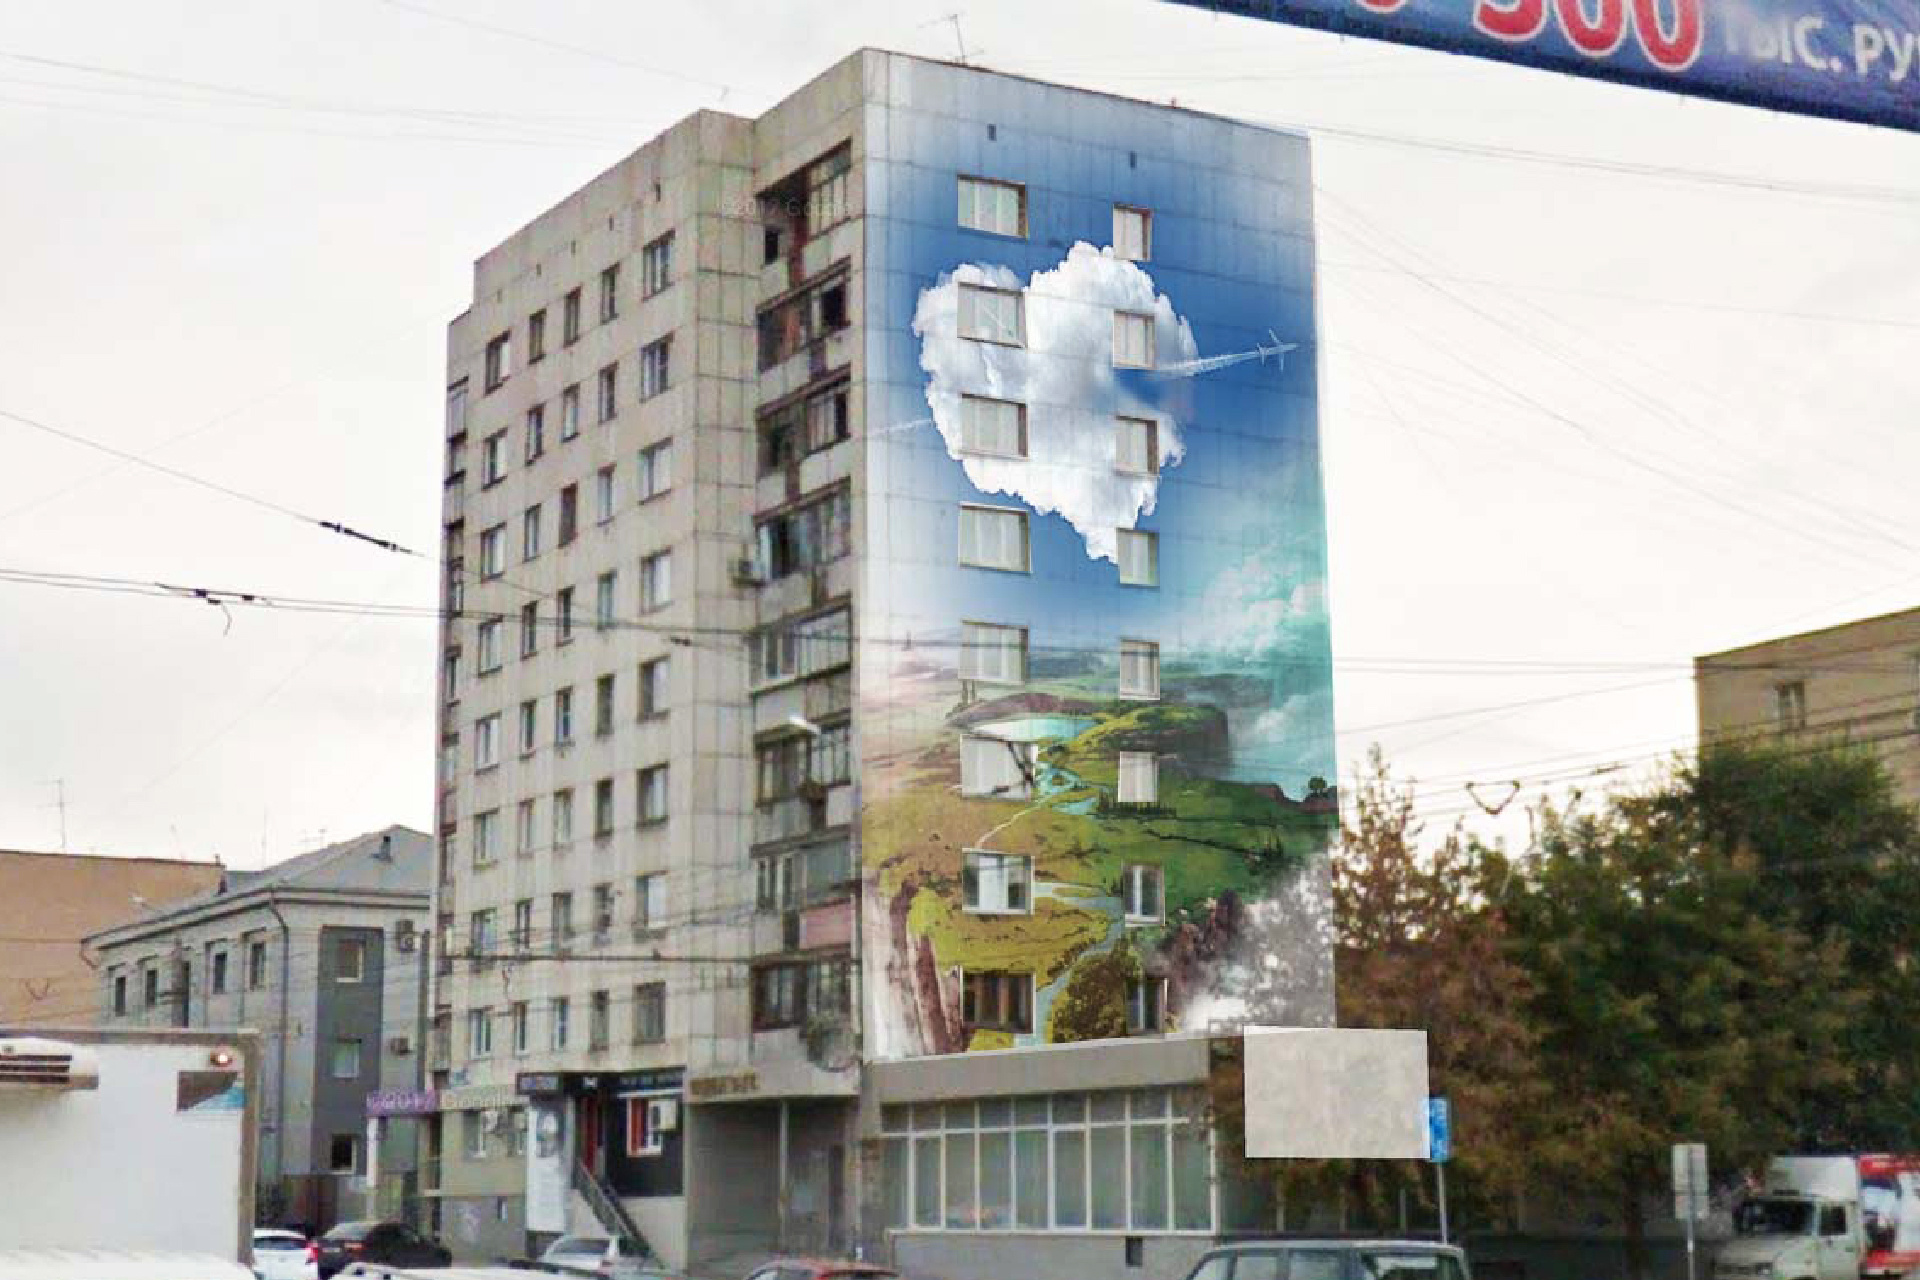 Сердечный рисунок на здании с ЗАГСом (Свердловский проспект, 54)